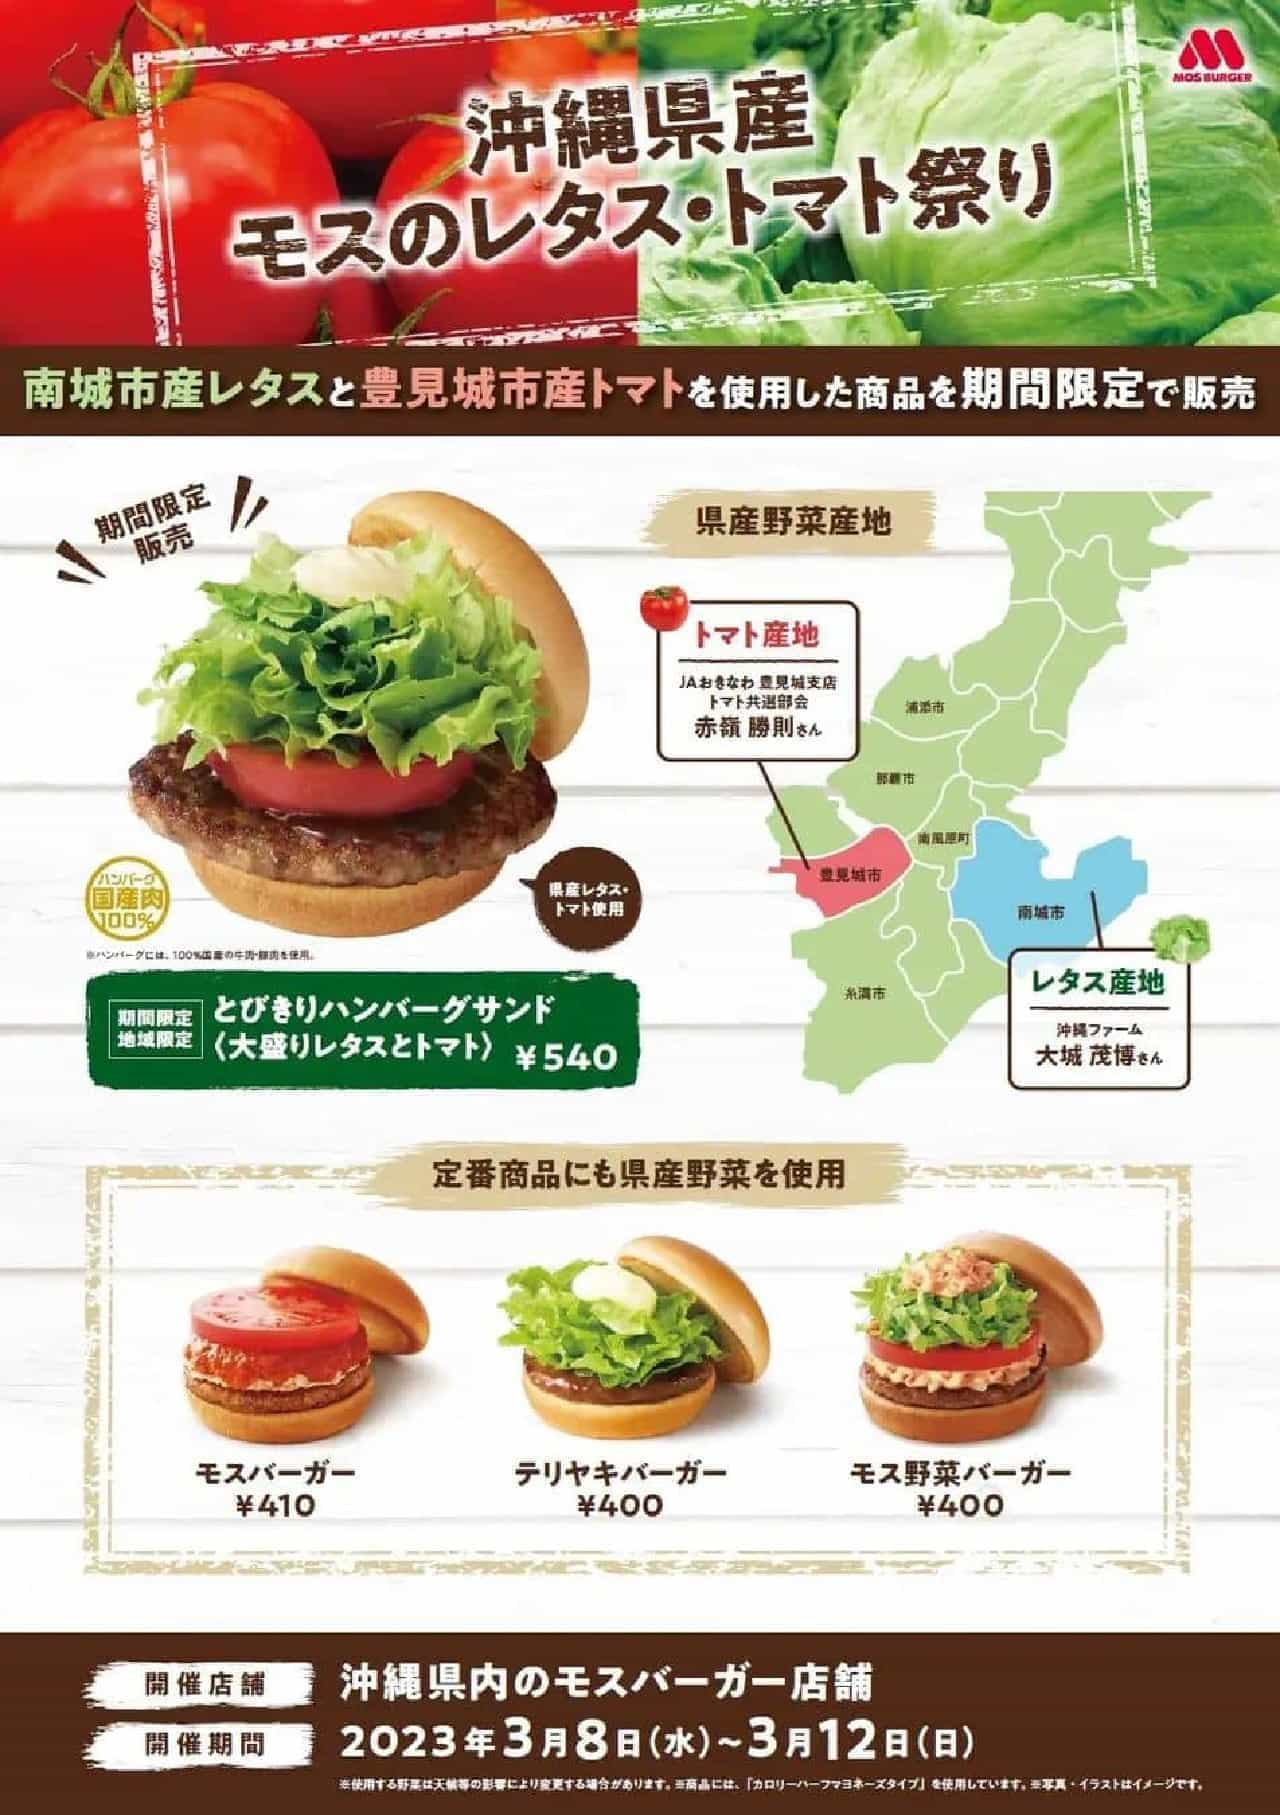 モスバーガー「沖縄県産モスのレタス・トマト祭り」